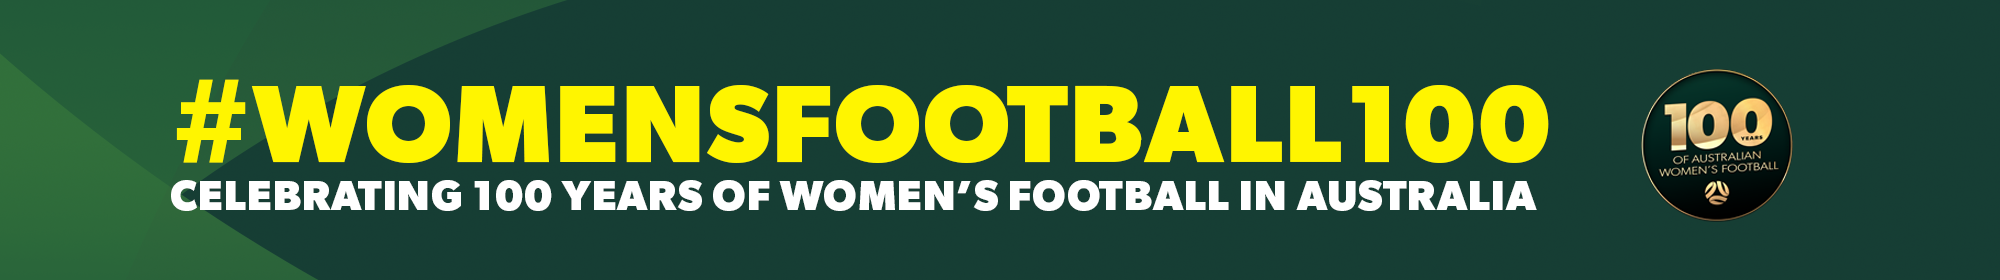 Women's Football 100 thin banner